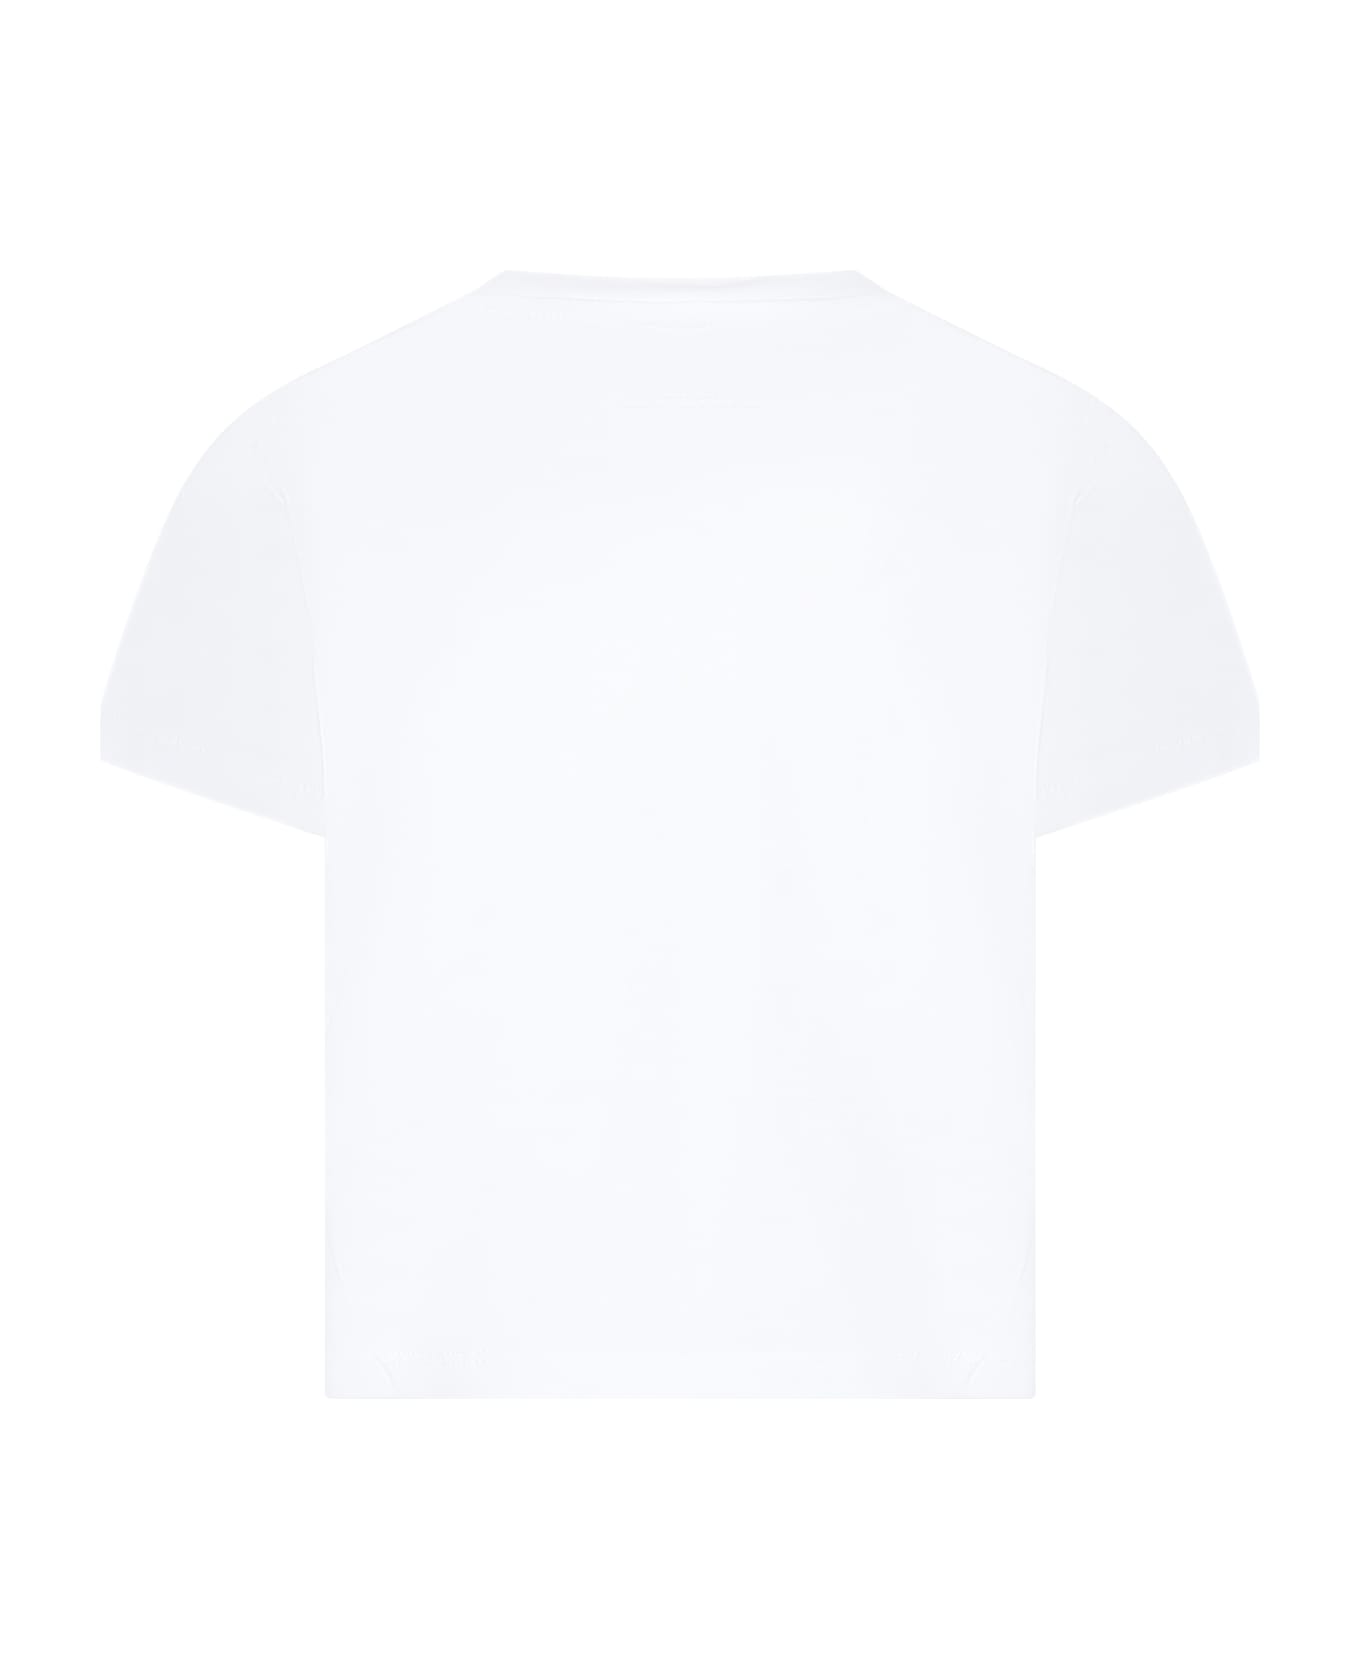 Stella McCartney Kids White T-shirt For Girl With Logo - White